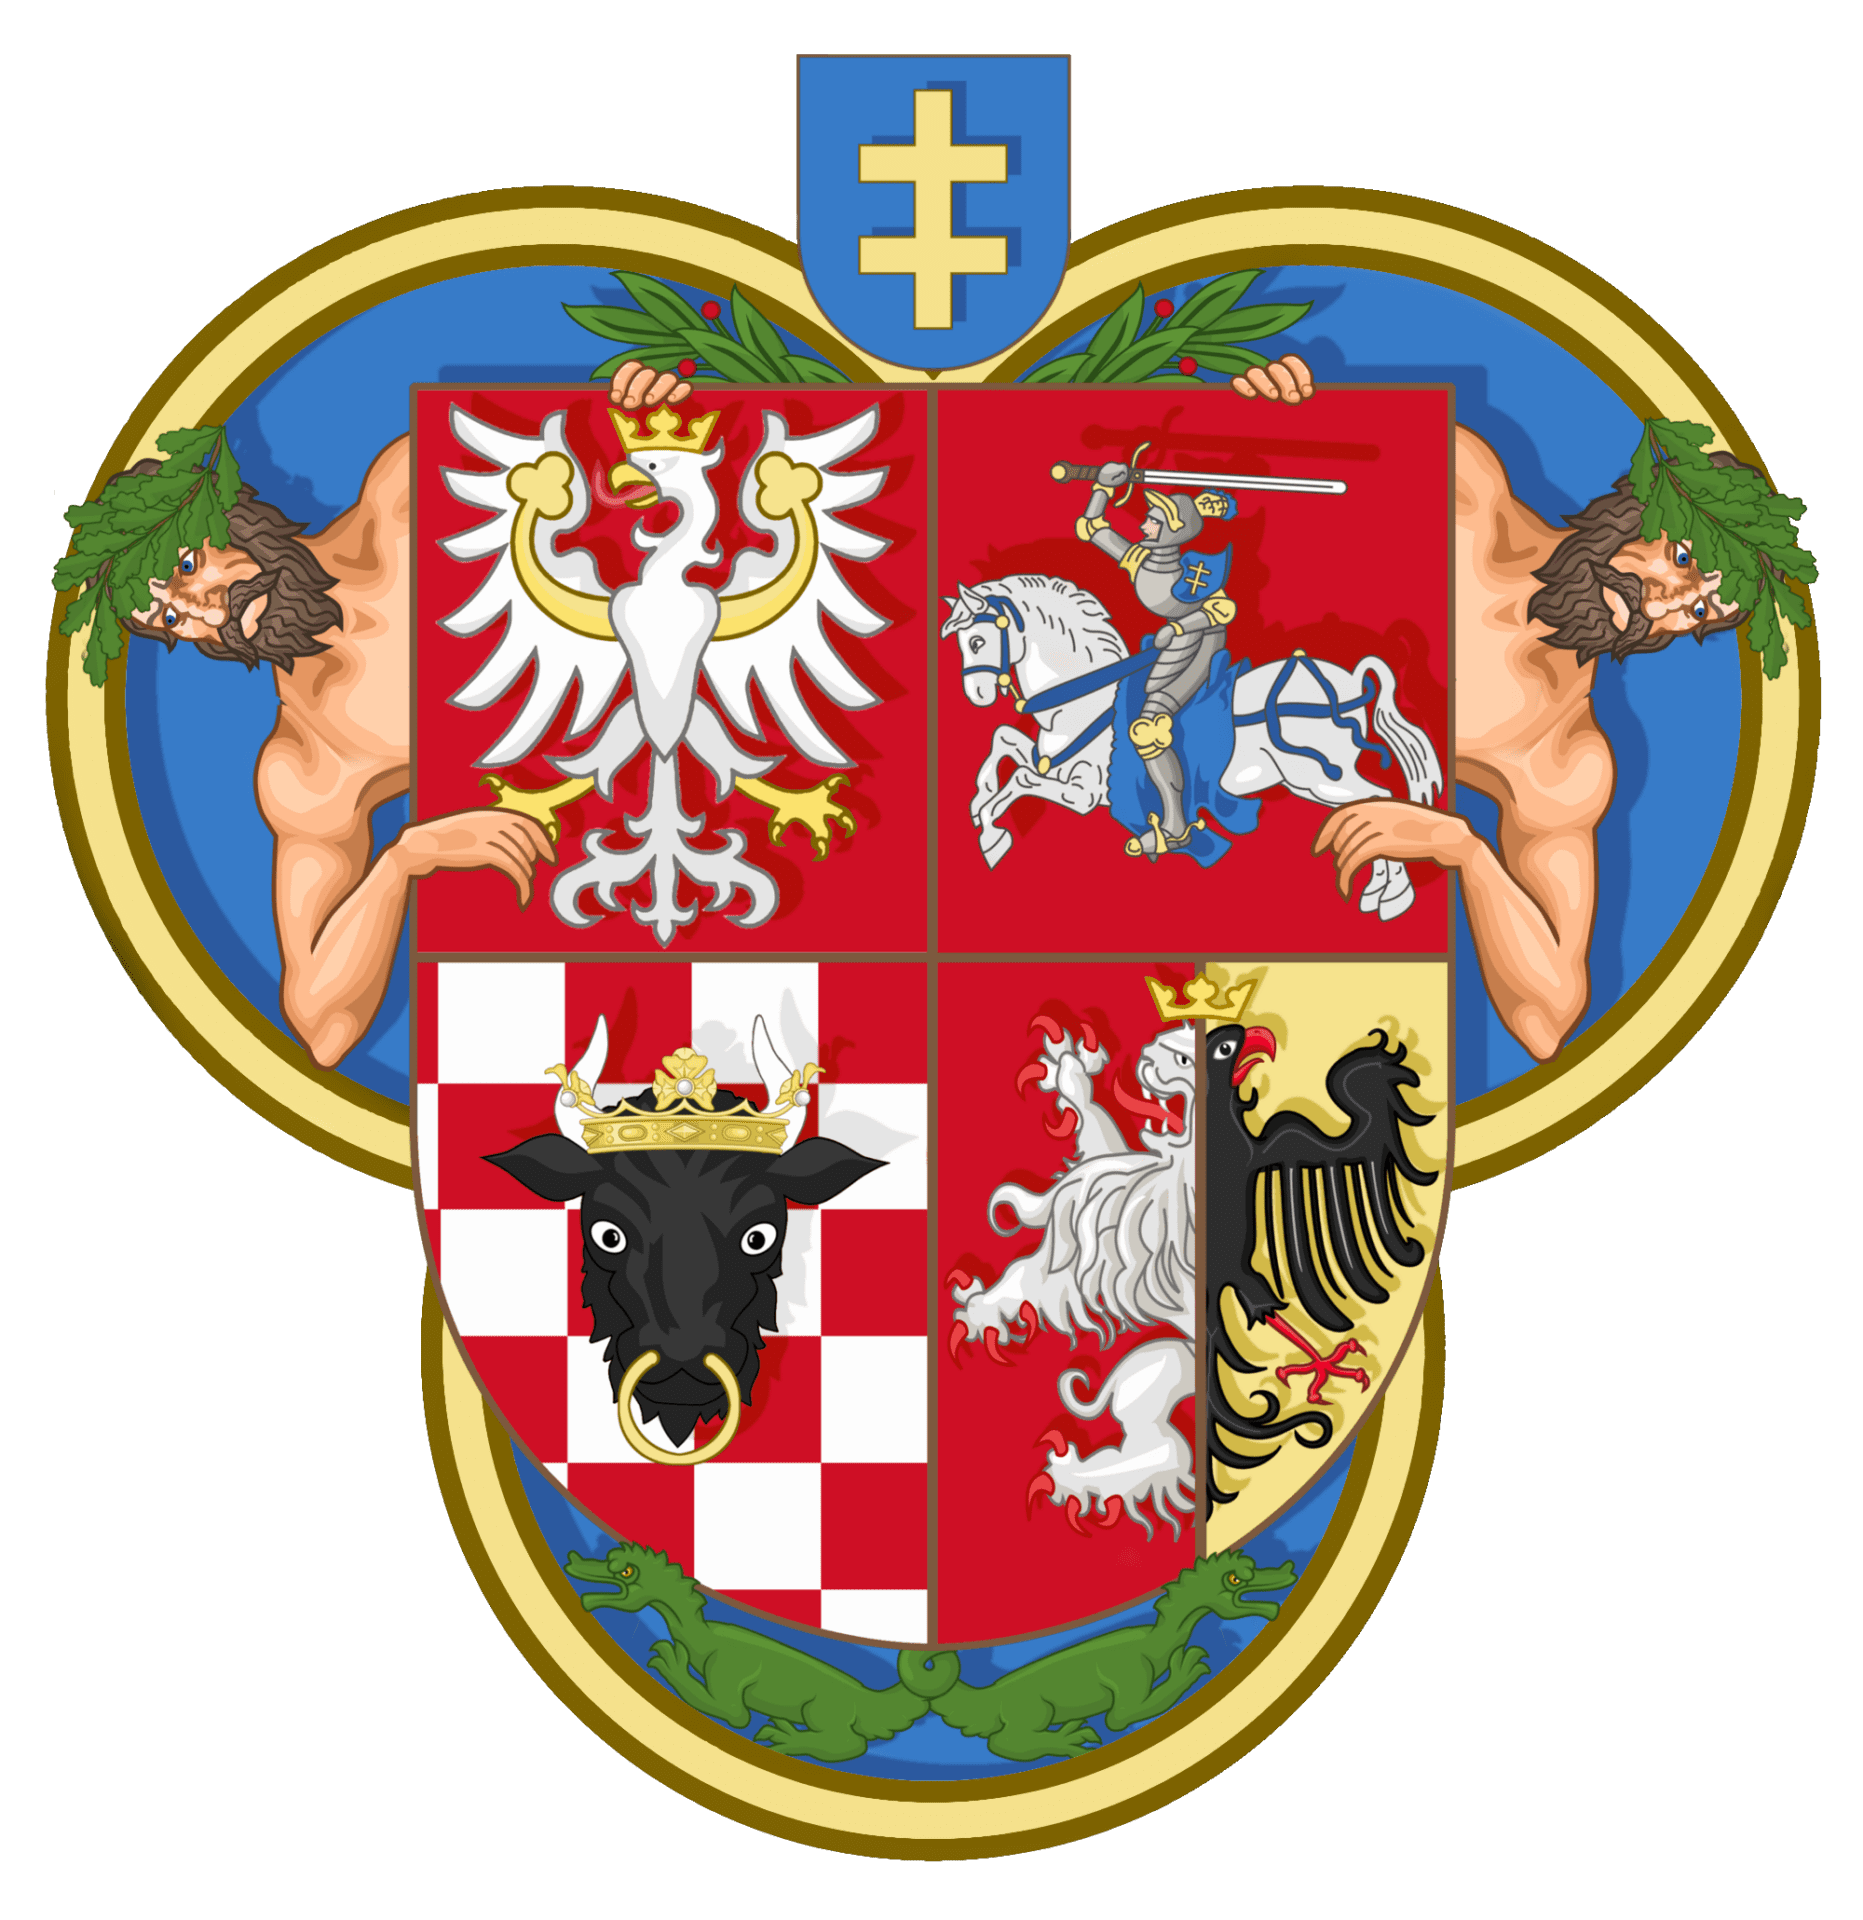 Współczesna rekonstrukcja herbu Kazimierza Jagiellończyka na podstawie jego pieczęci. Na głowie orła widać otwartą koronę.